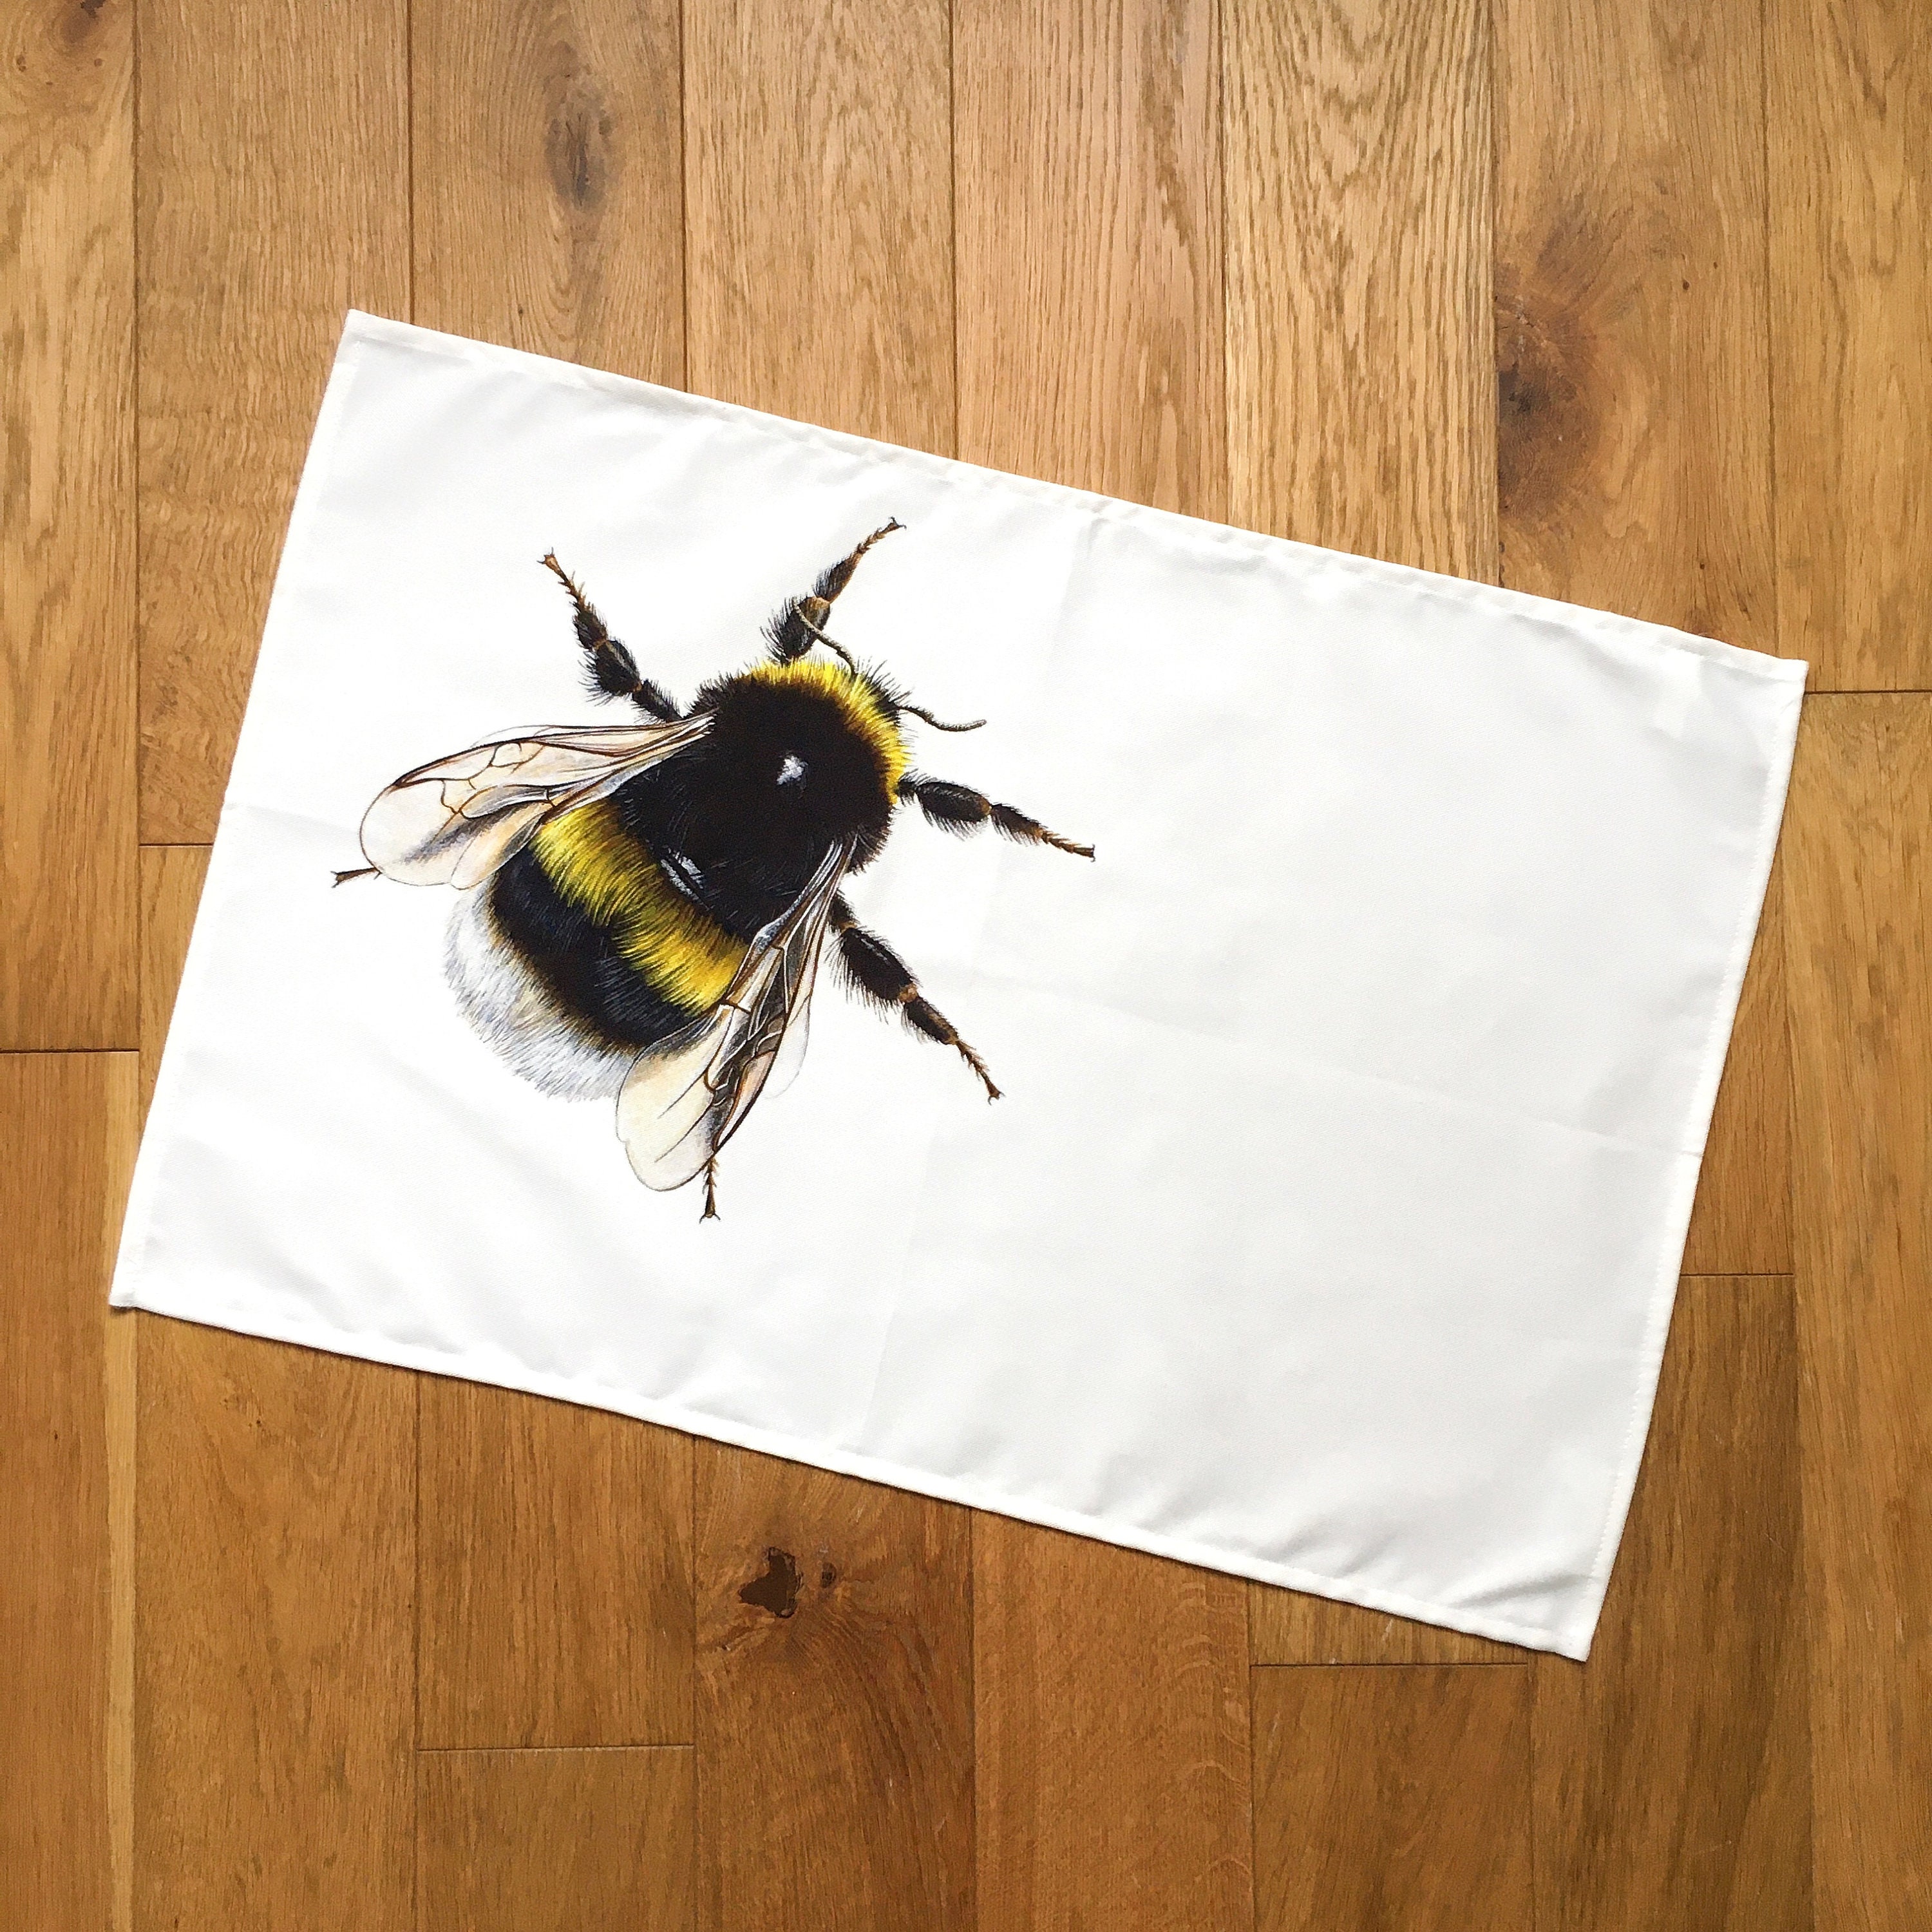 Bumble Bee Cotton Tea Towel Set